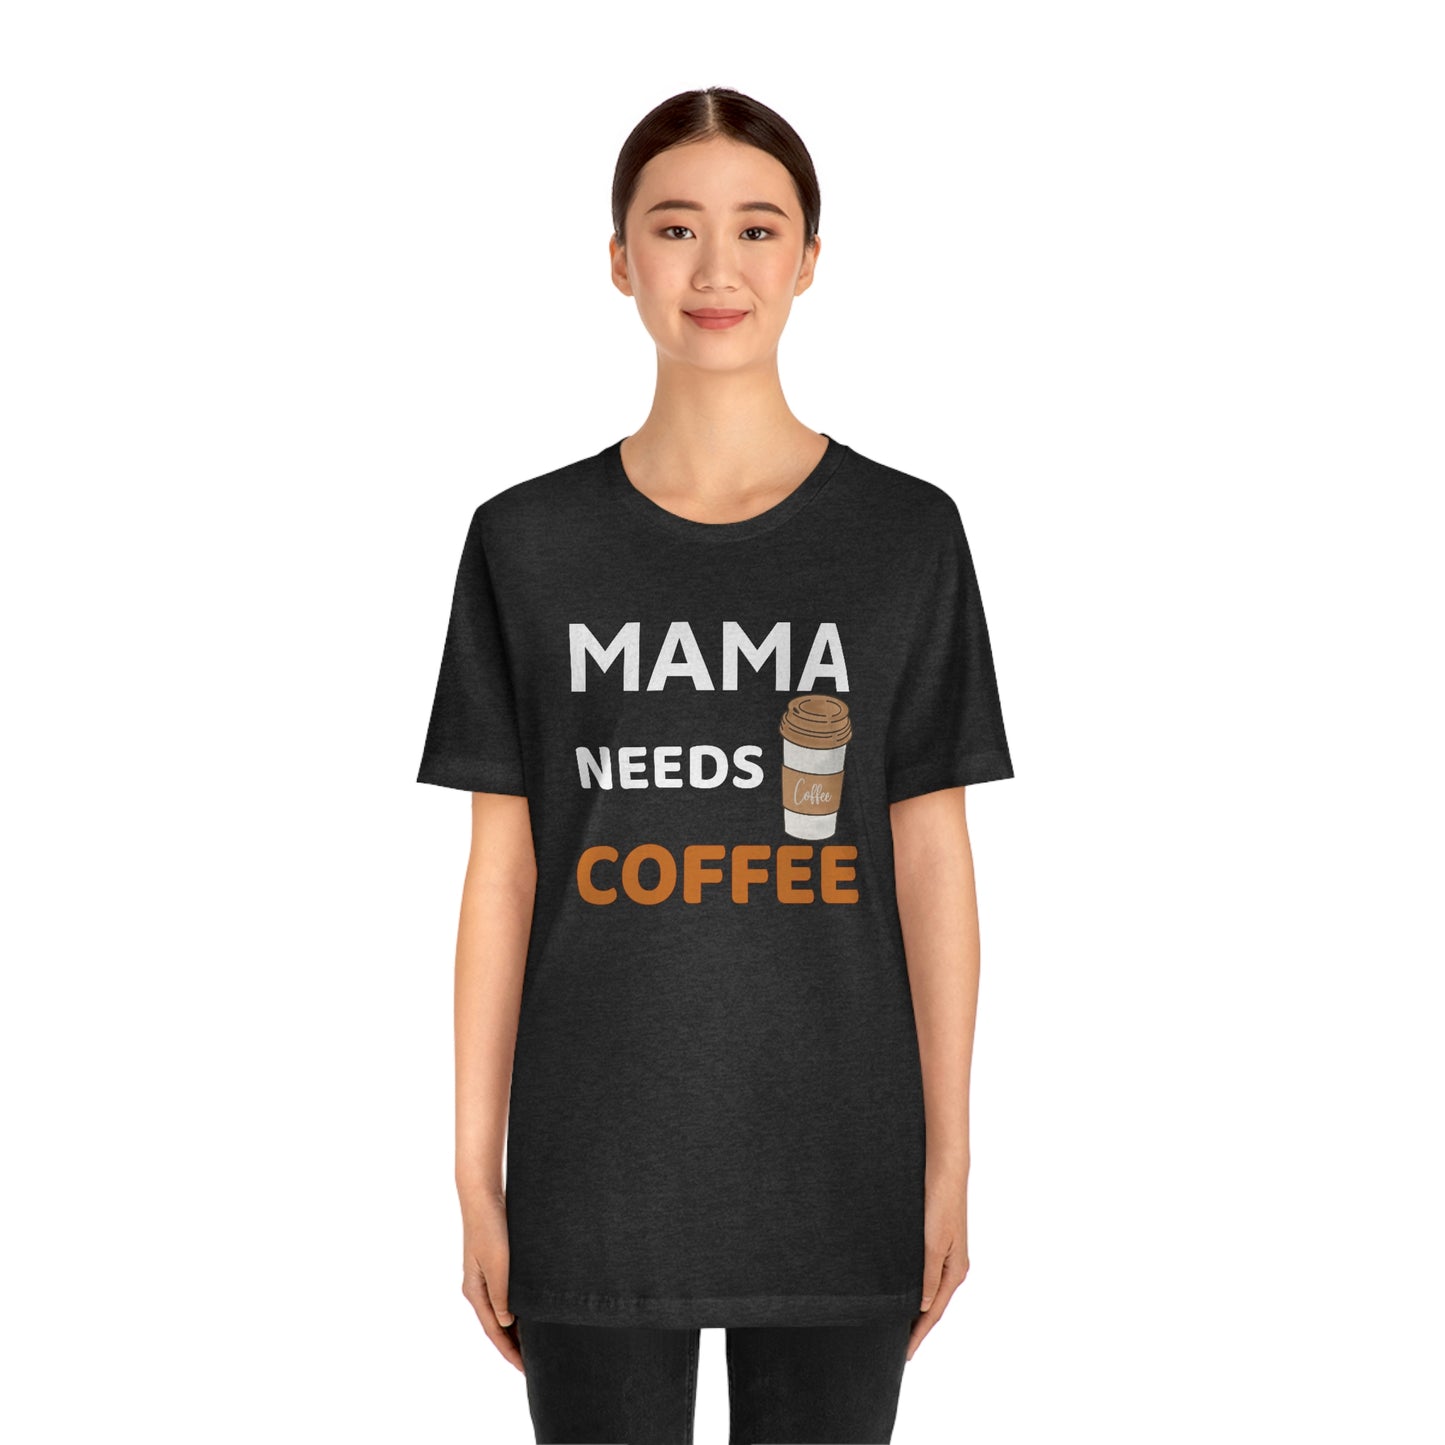 Mama Needs Coffee shirt - Coffee lovers shirt - funny coffee shirt